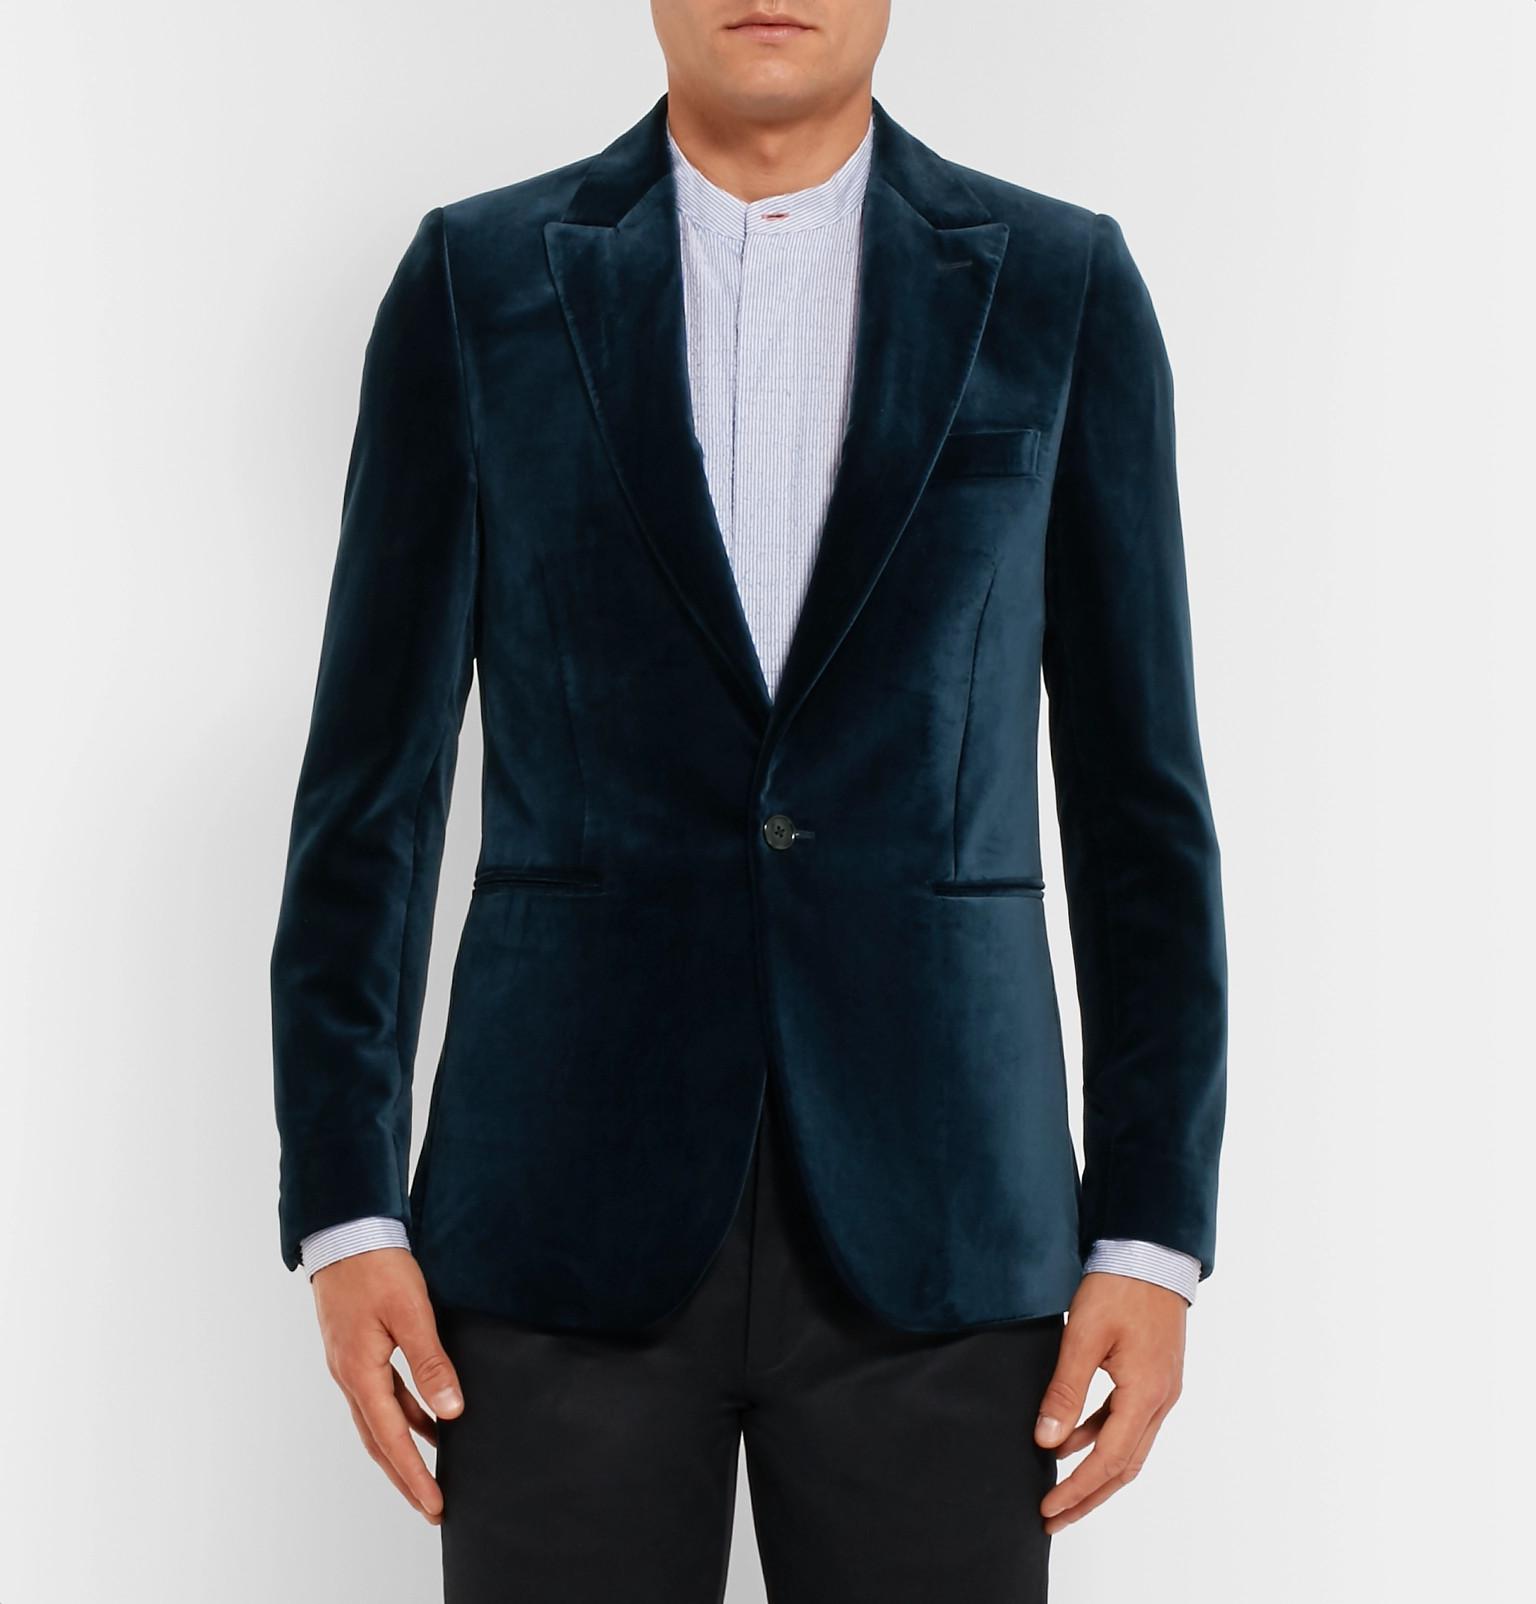 Paul Smith Midnight-blue Velvet Tuxedo Jacket for Men - Lyst